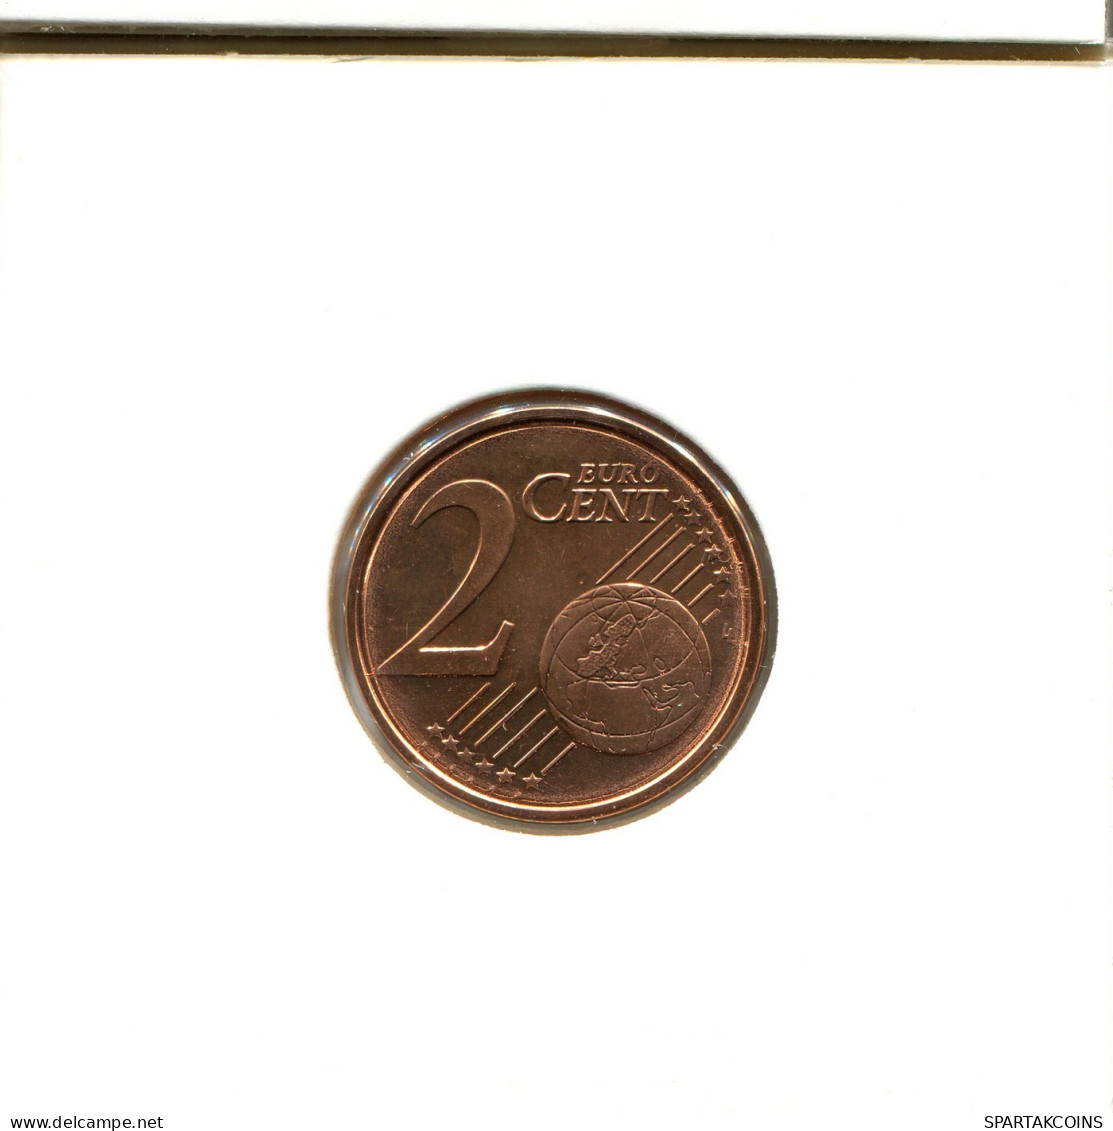 2 EURO CENTS 2010 GREECE Coin #EU179.U.A - Greece